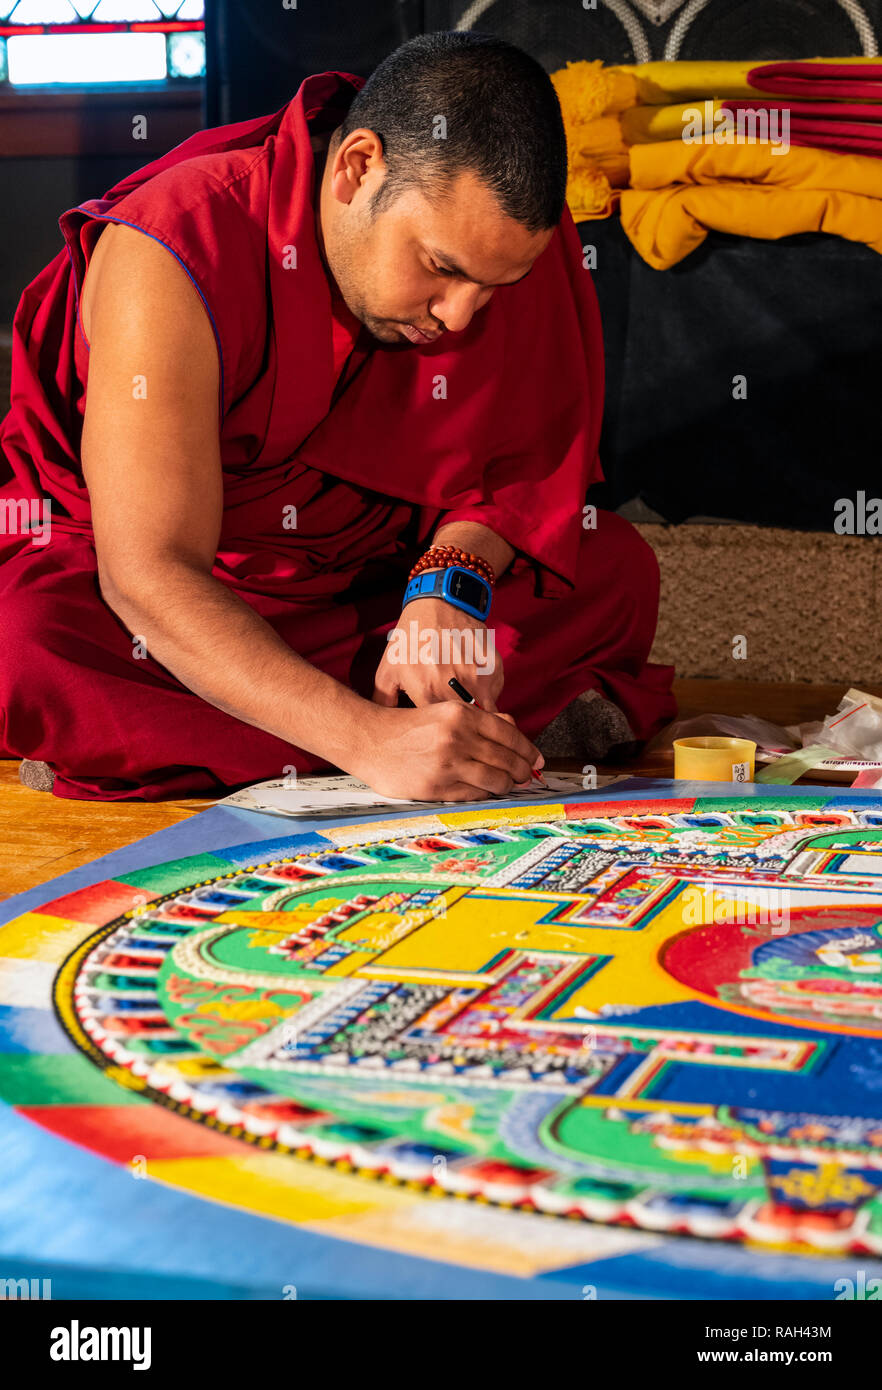 Viaggiare il Tibetano Tashi Kyil i monaci buddisti costruire una sabbia benedetta Chinrezig Mandala; ceremoniously per essere dissolti in Arkansas River; Salida; C Foto Stock